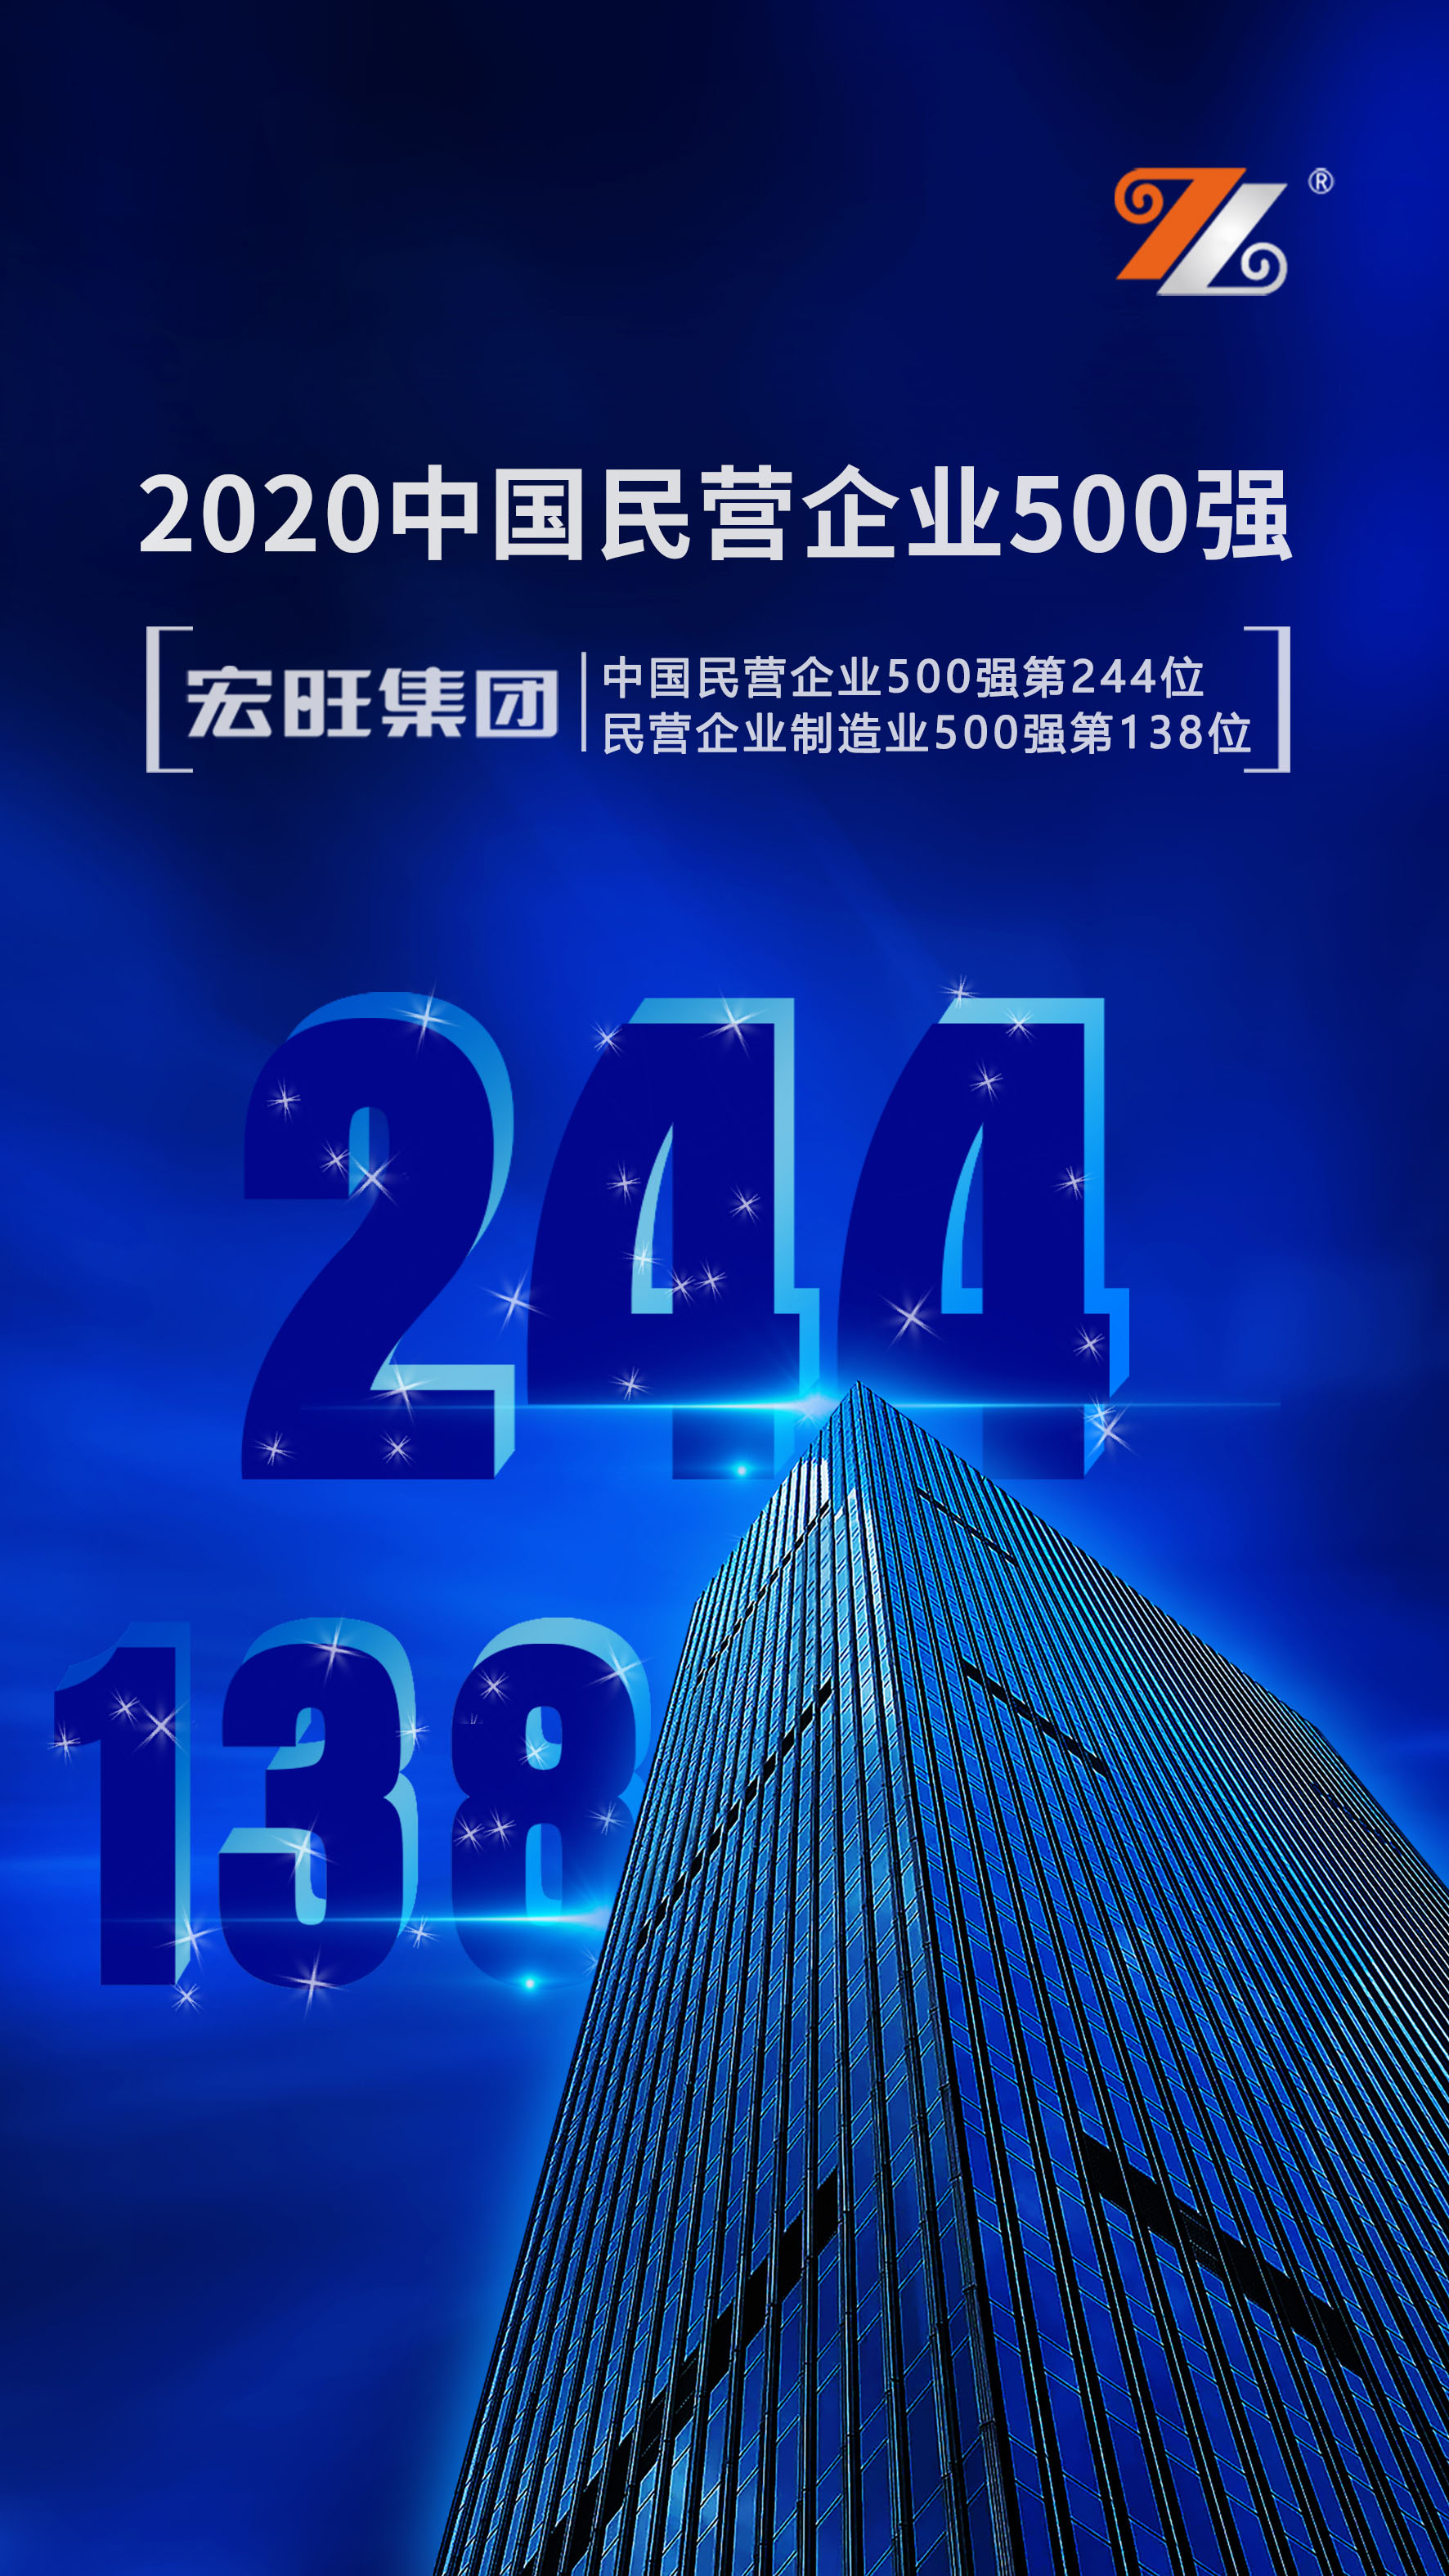 宏旺集团位列2020年中国民营企业500强第244位